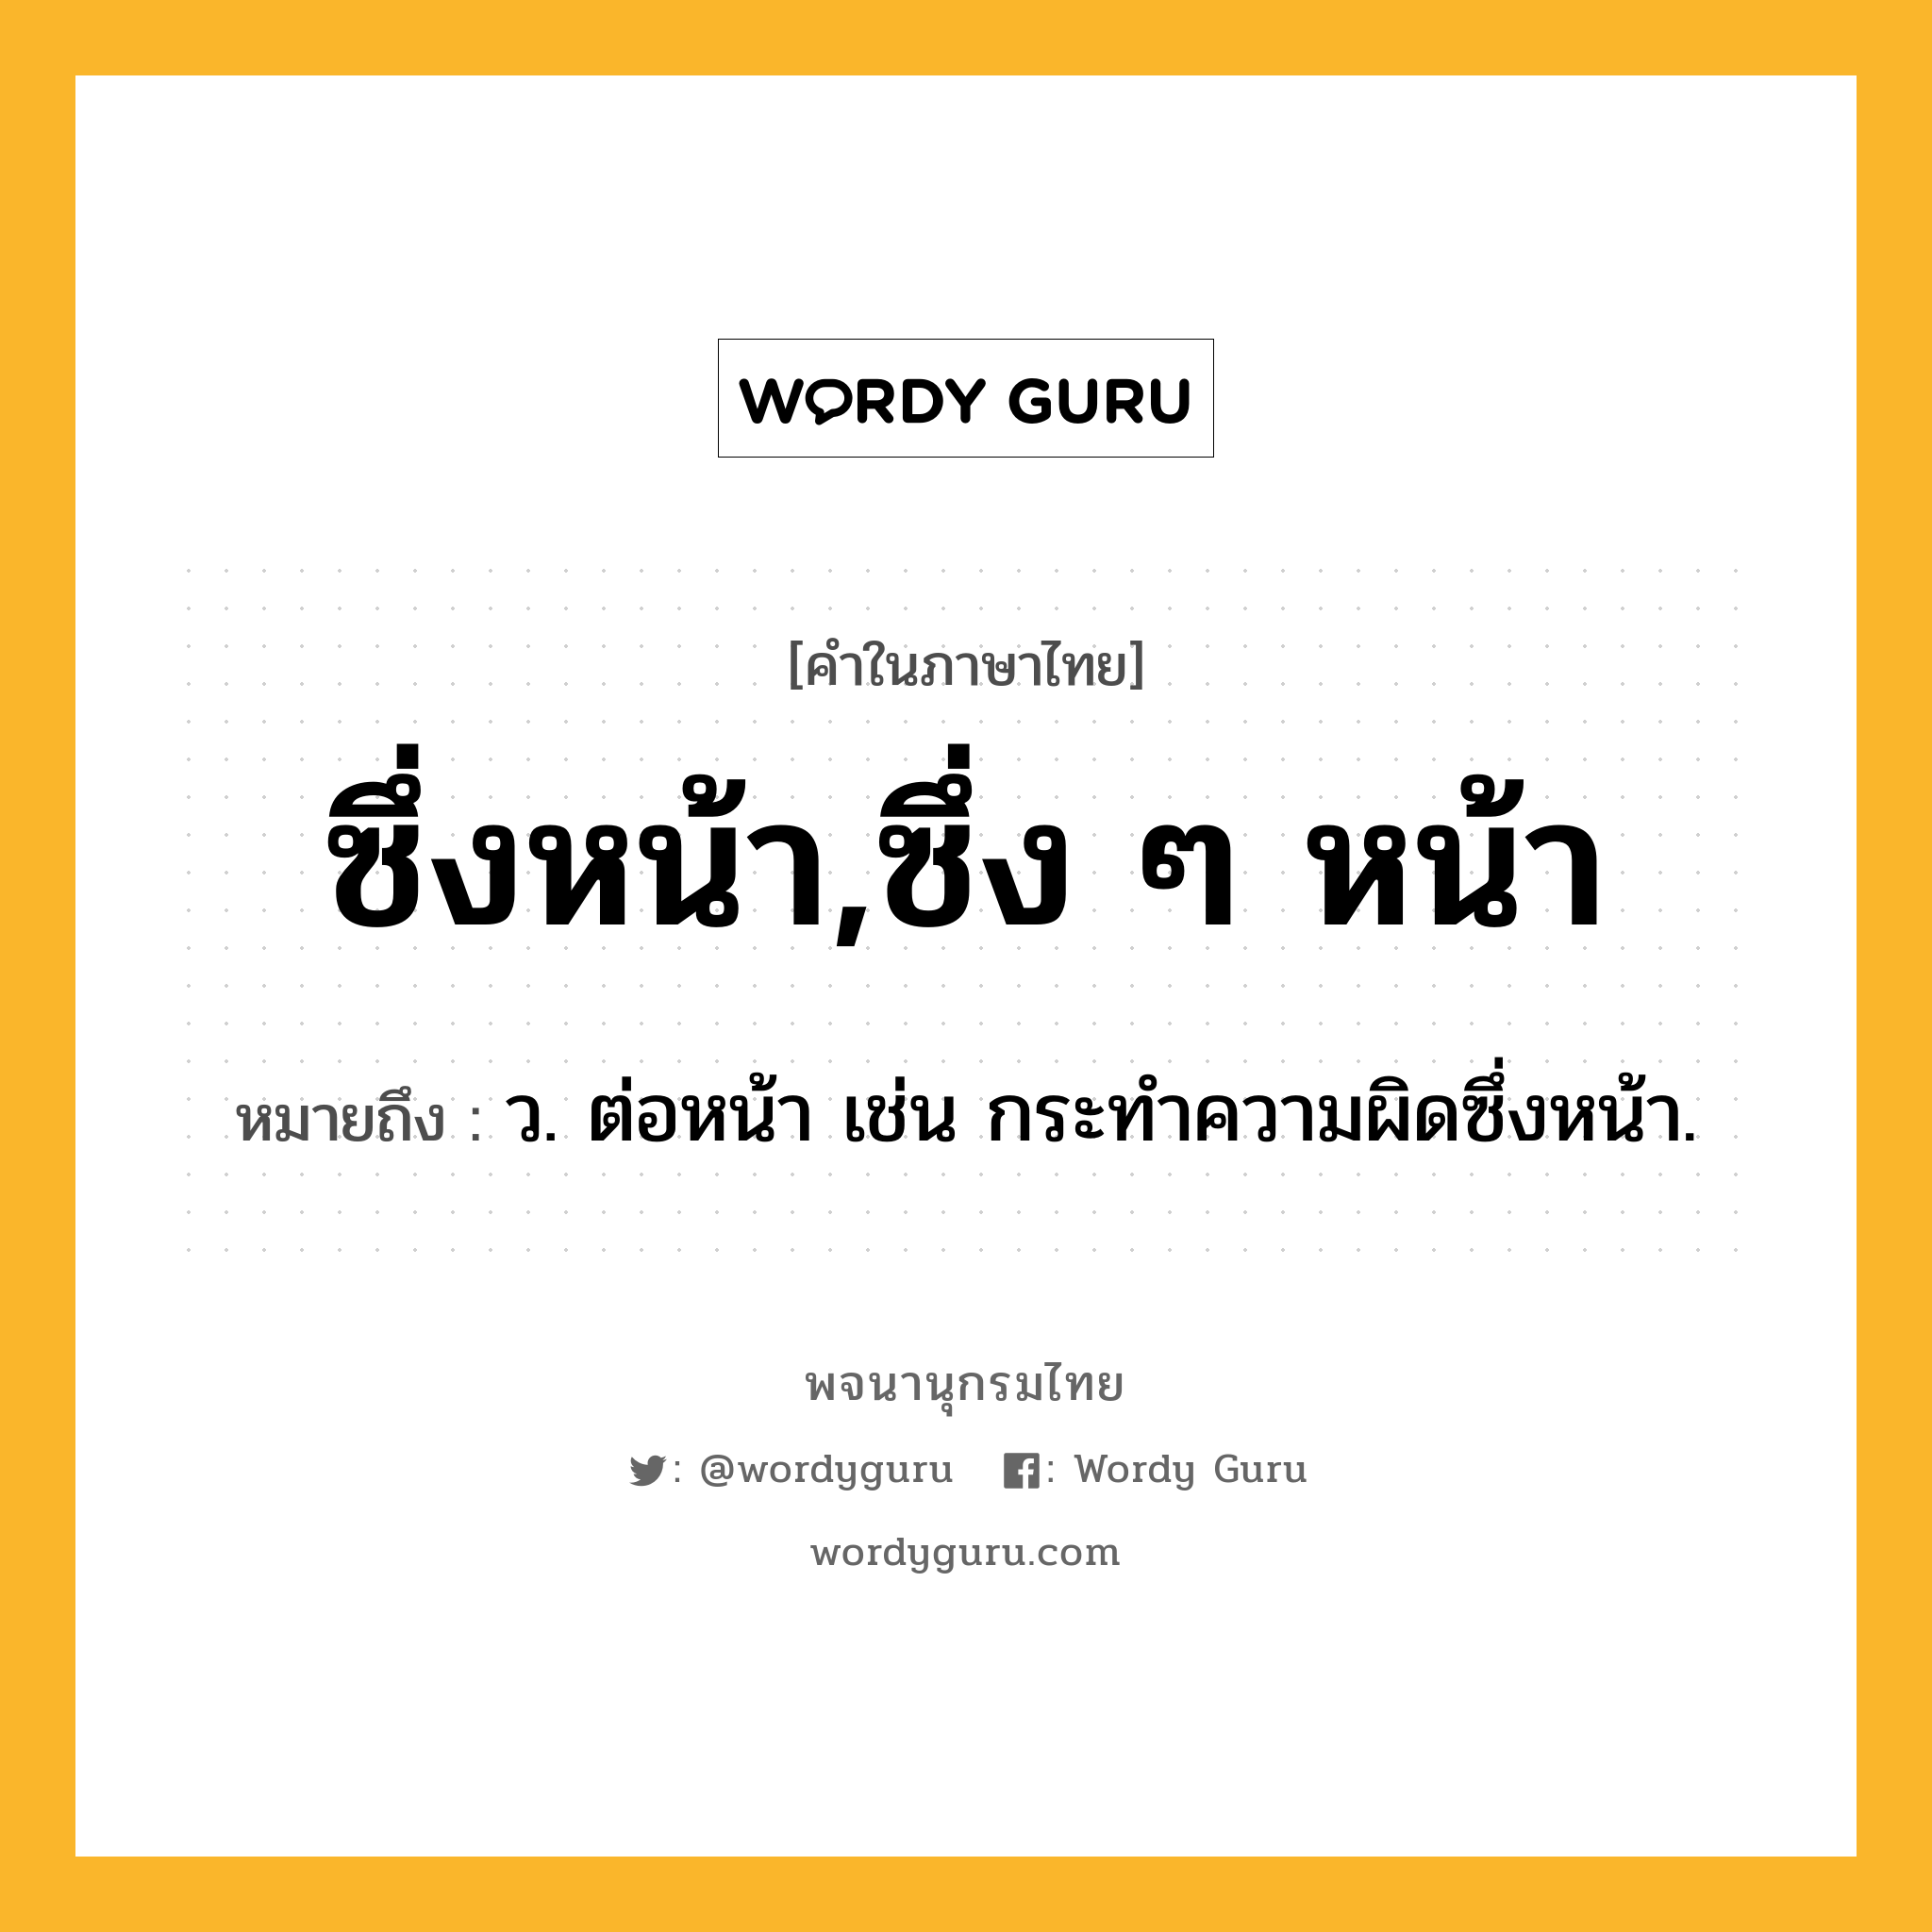 ซึ่งหน้า,ซึ่ง ๆ หน้า ความหมาย หมายถึงอะไร?, คำในภาษาไทย ซึ่งหน้า,ซึ่ง ๆ หน้า หมายถึง ว. ต่อหน้า เช่น กระทําความผิดซึ่งหน้า.